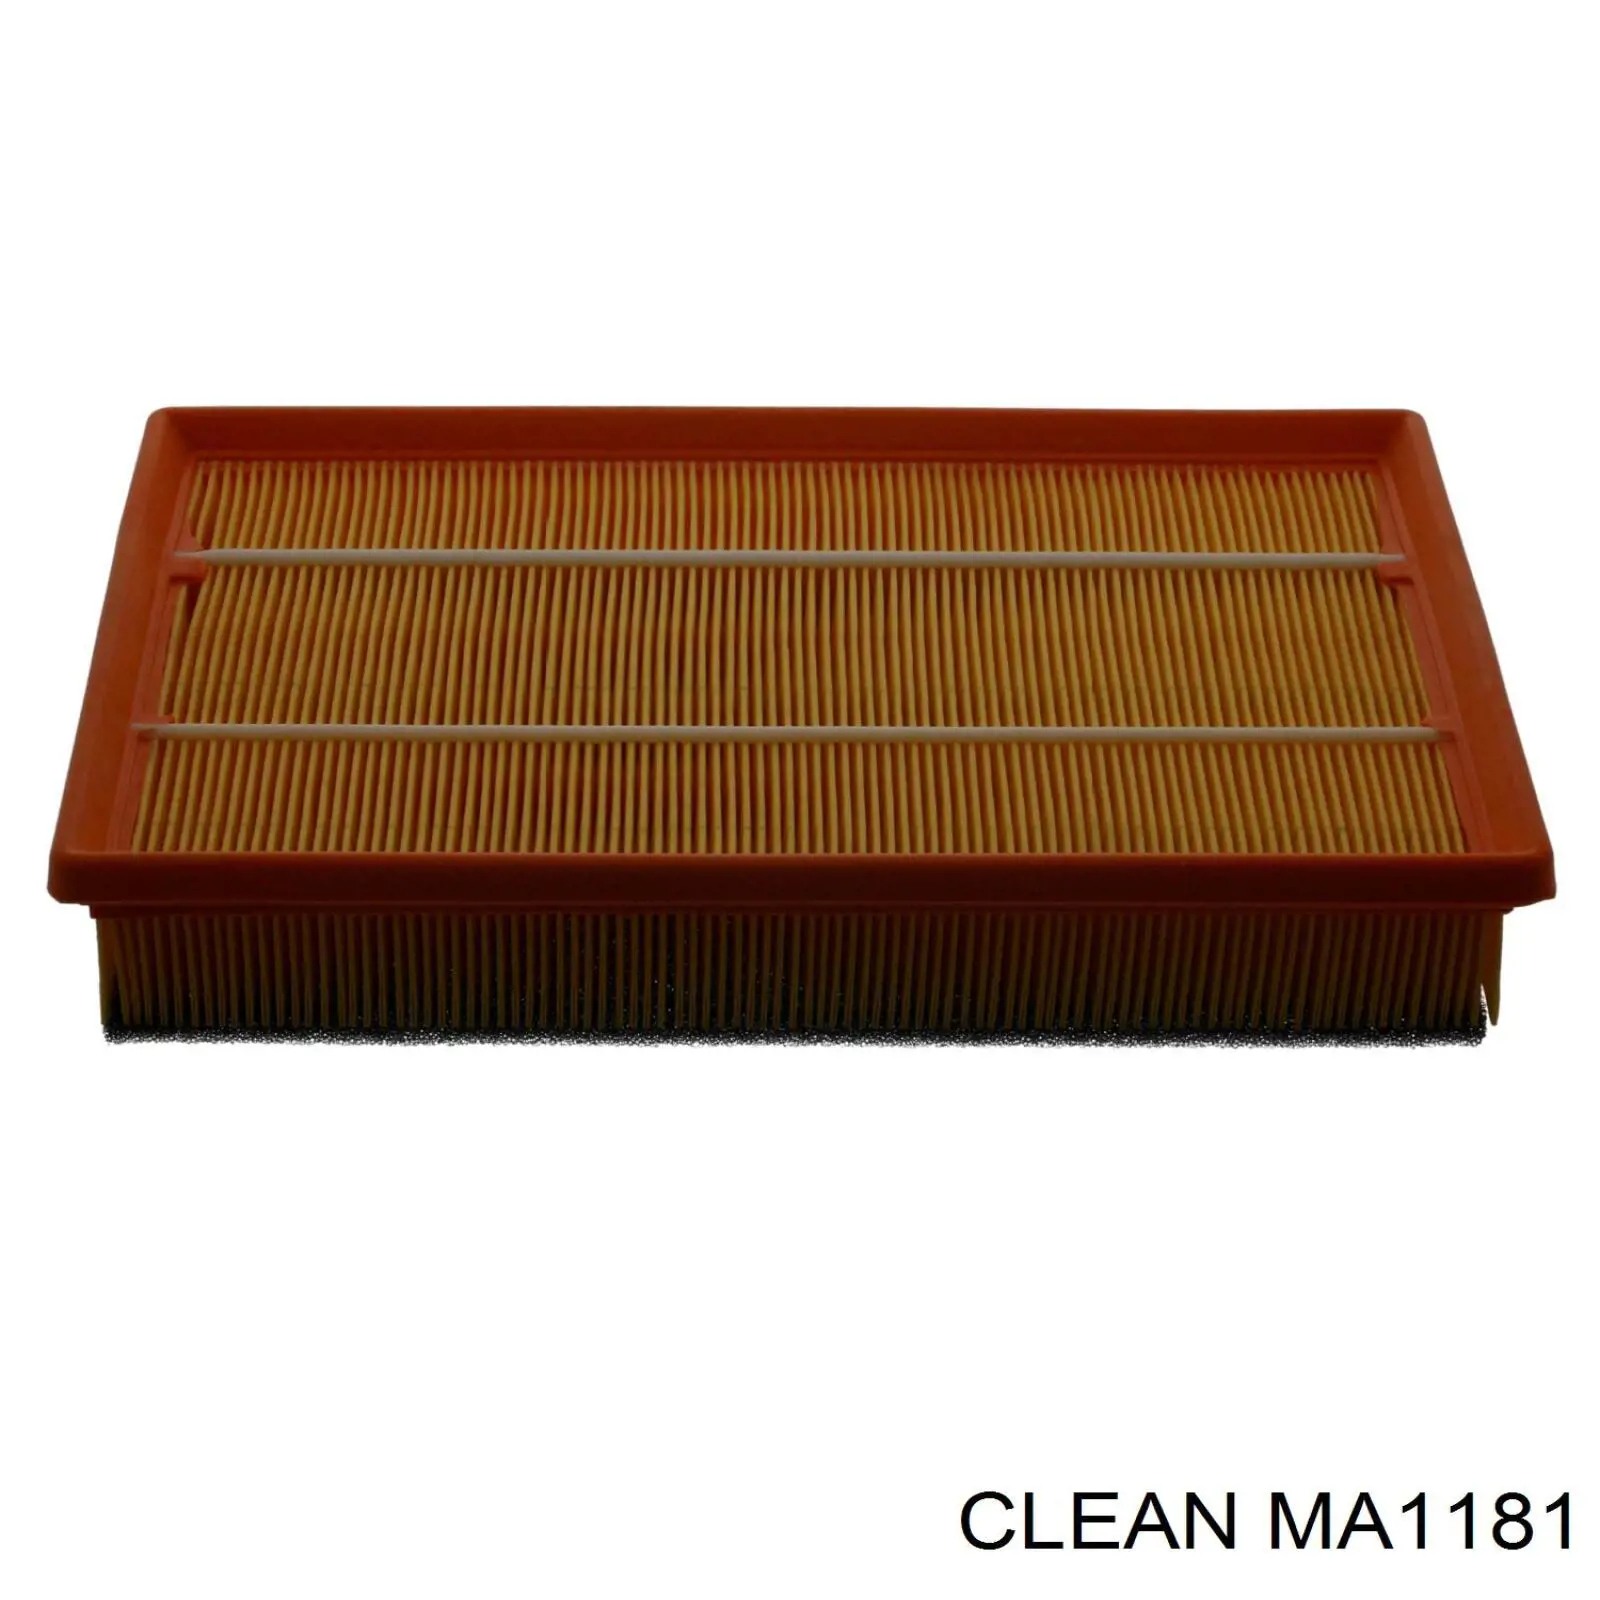 MA1181 Clean filtro de aire